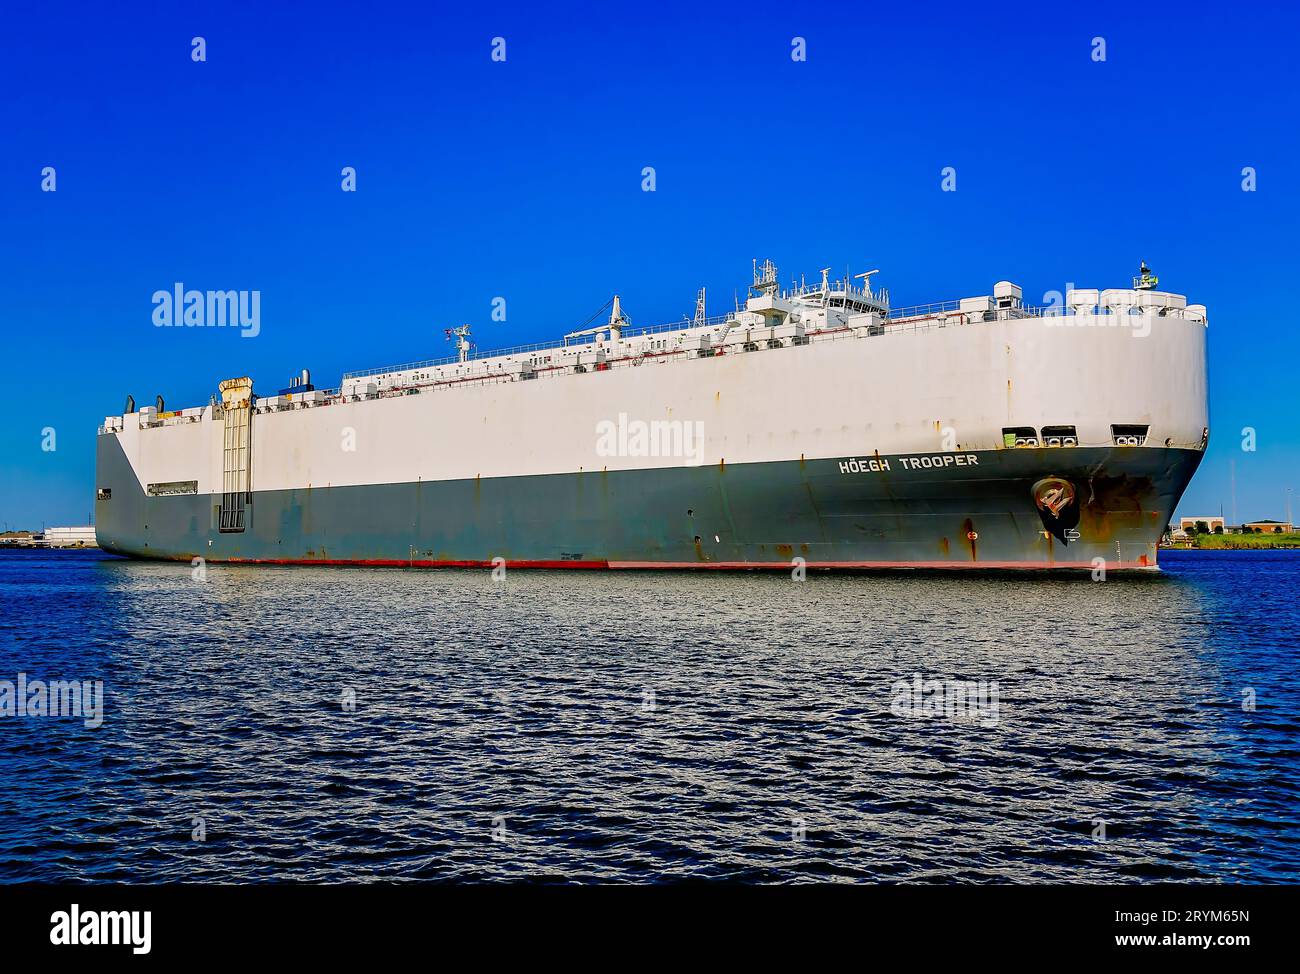 Der Transporteur Höegh Trooper verlässt den Hafen von Mobile am 30. September 2023 in Mobile, Alabama. Das Schiff gehört zur Höegh Autoliners Flotte. Stockfoto